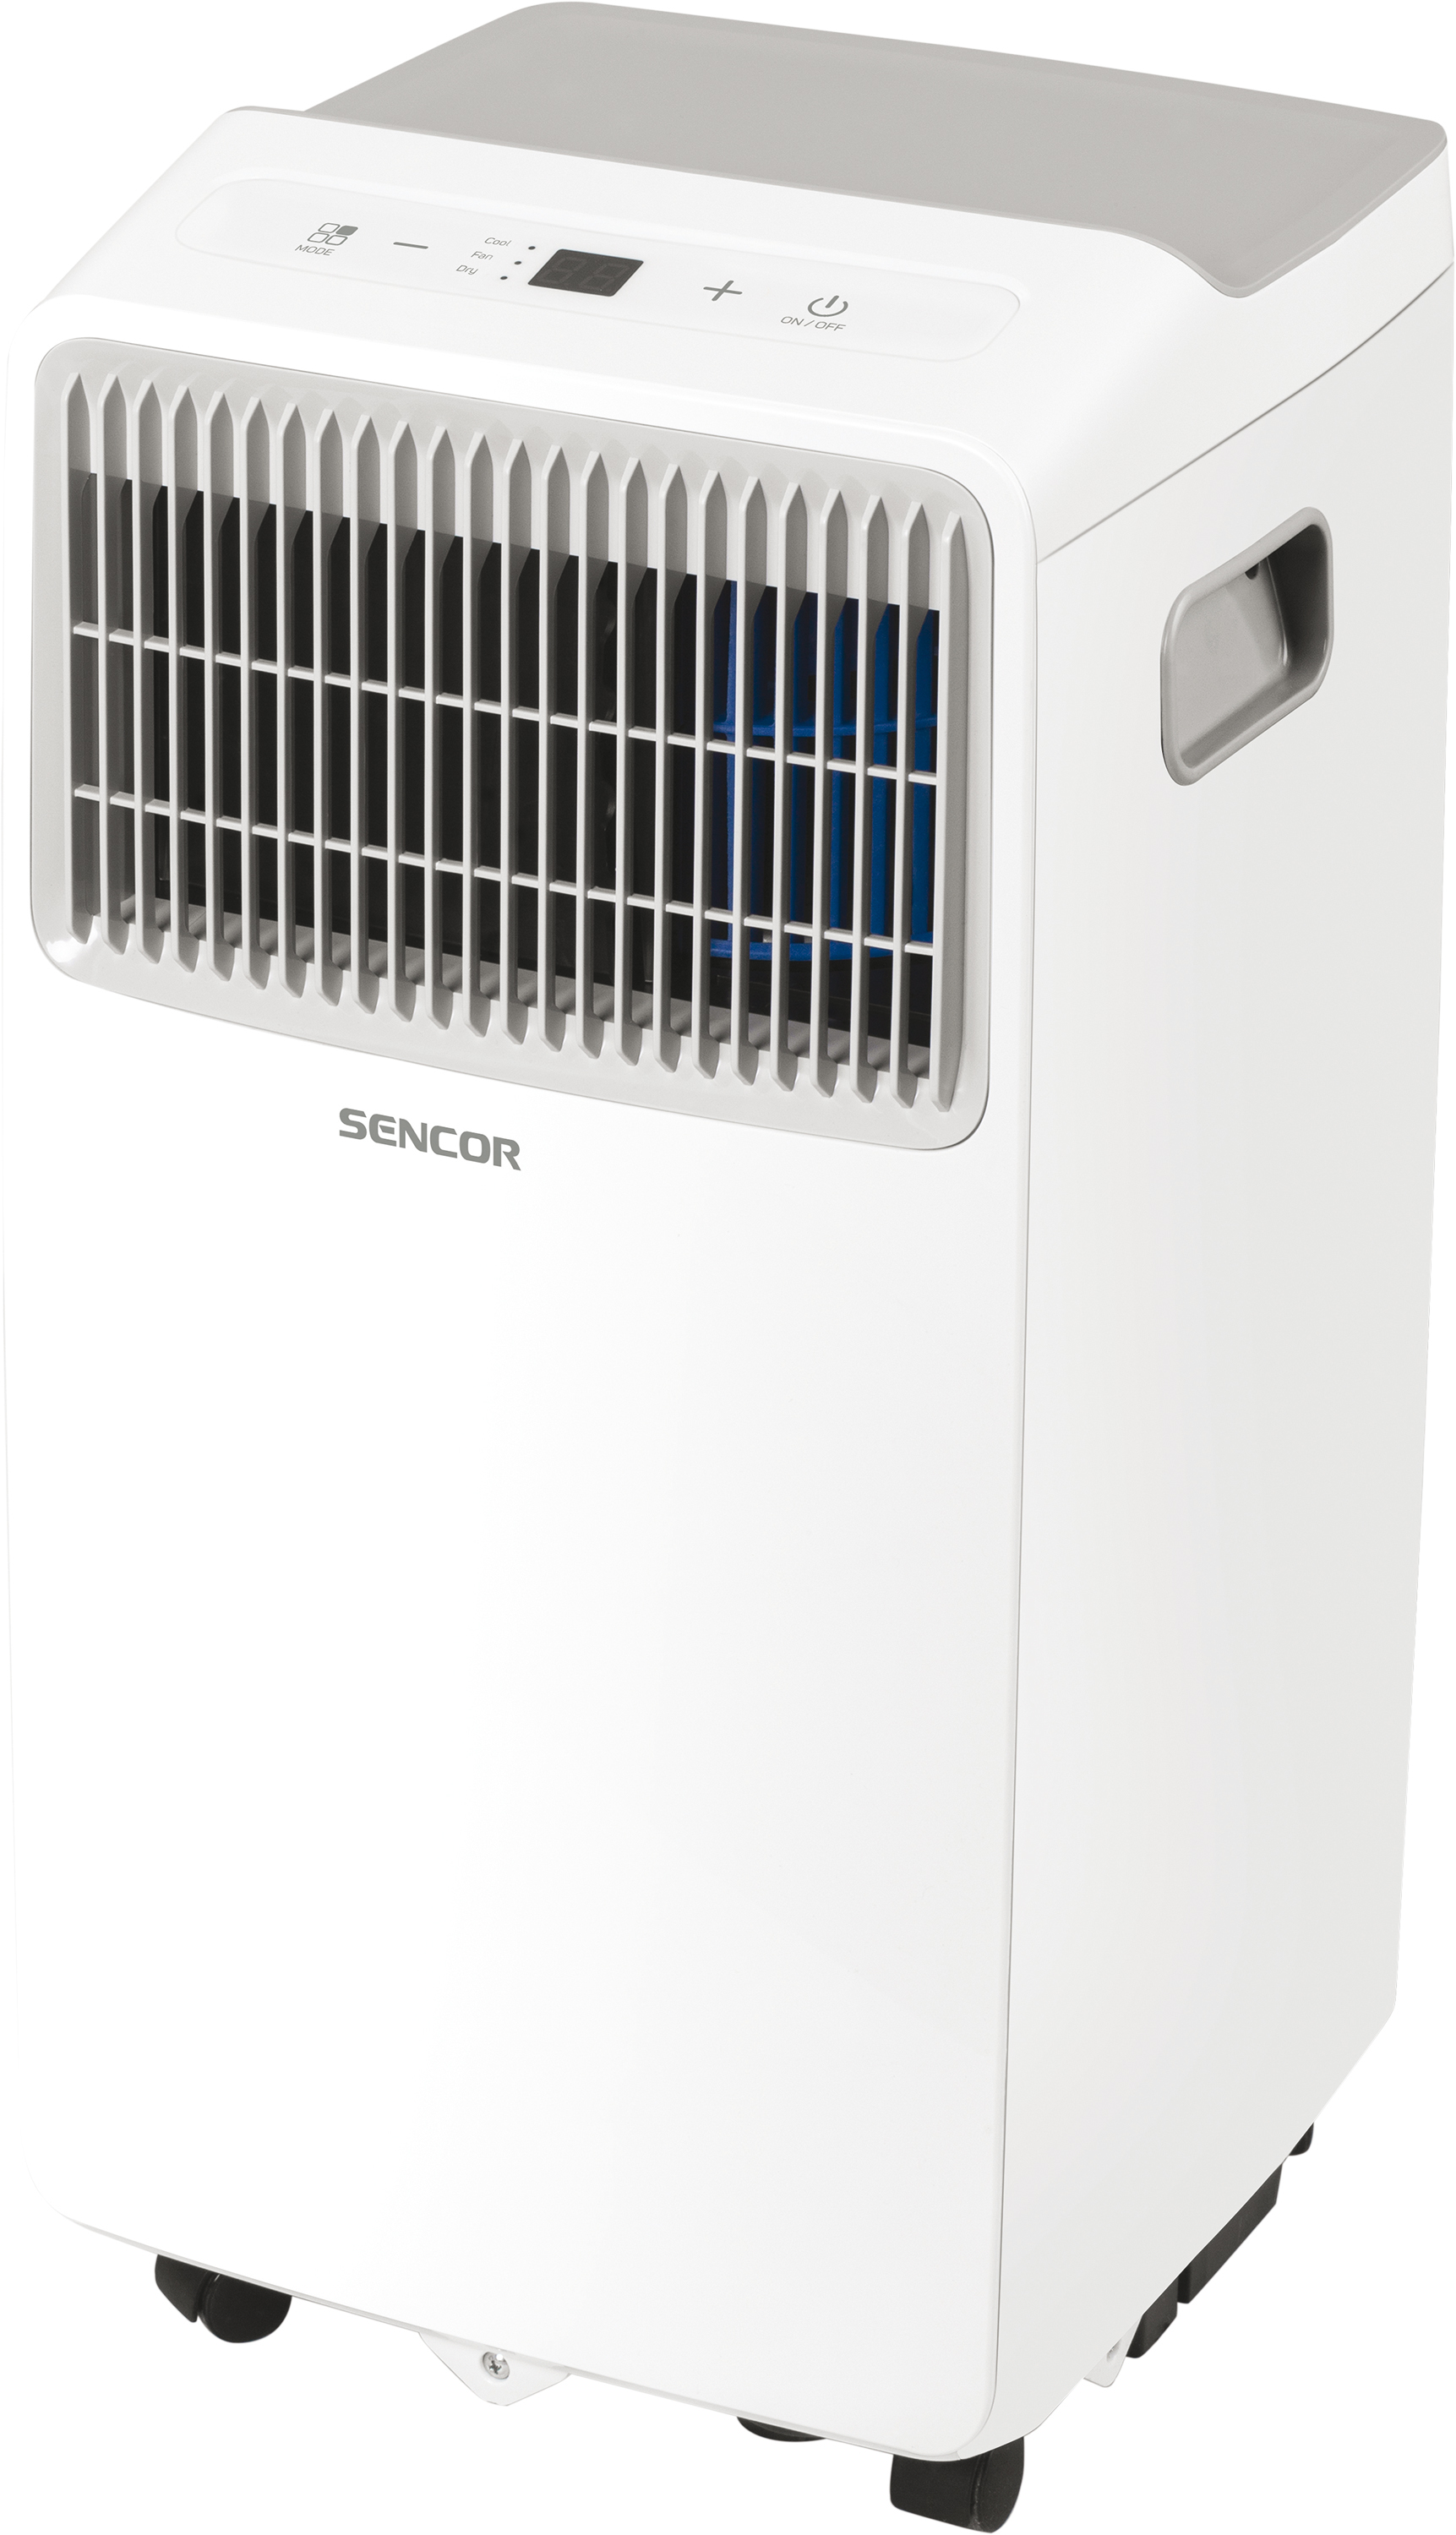 SENCOR SAC MT7013C Mobilná klimatizácia,A, 7 000 BTU, 4 prevádzkové režimy / 3 úrovne rýchlosti, nastavenie teploty 17-30 °C, využiteľná plocha 21-26 m2/54-67 m3